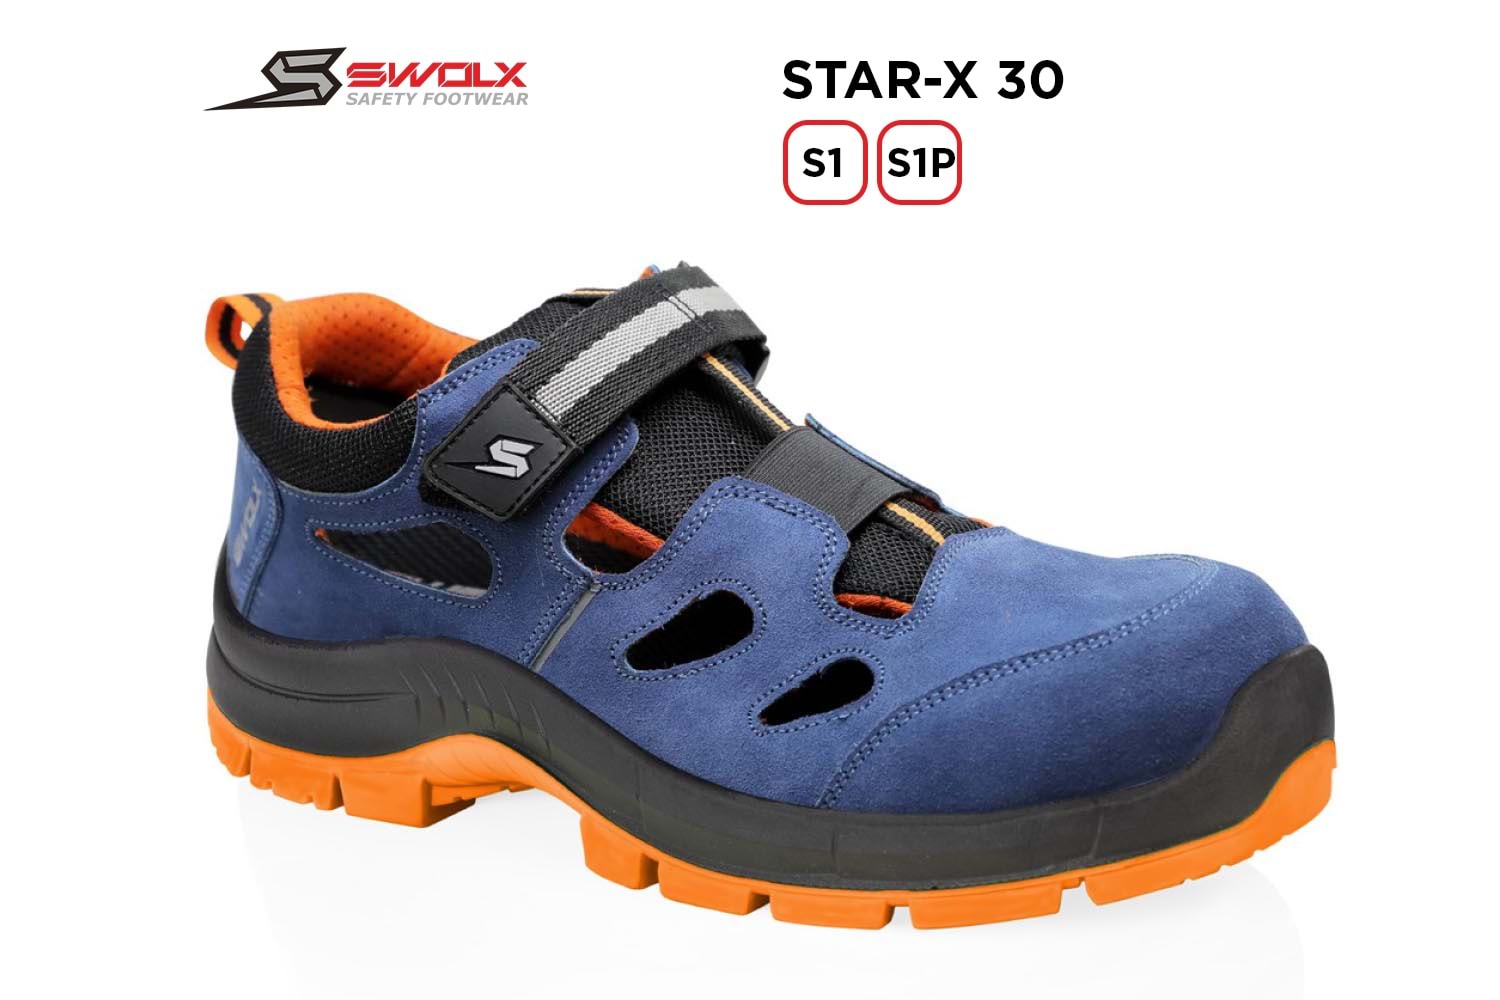 Swolx İş Ayakkabısı - Star-X 30 S1 - 42